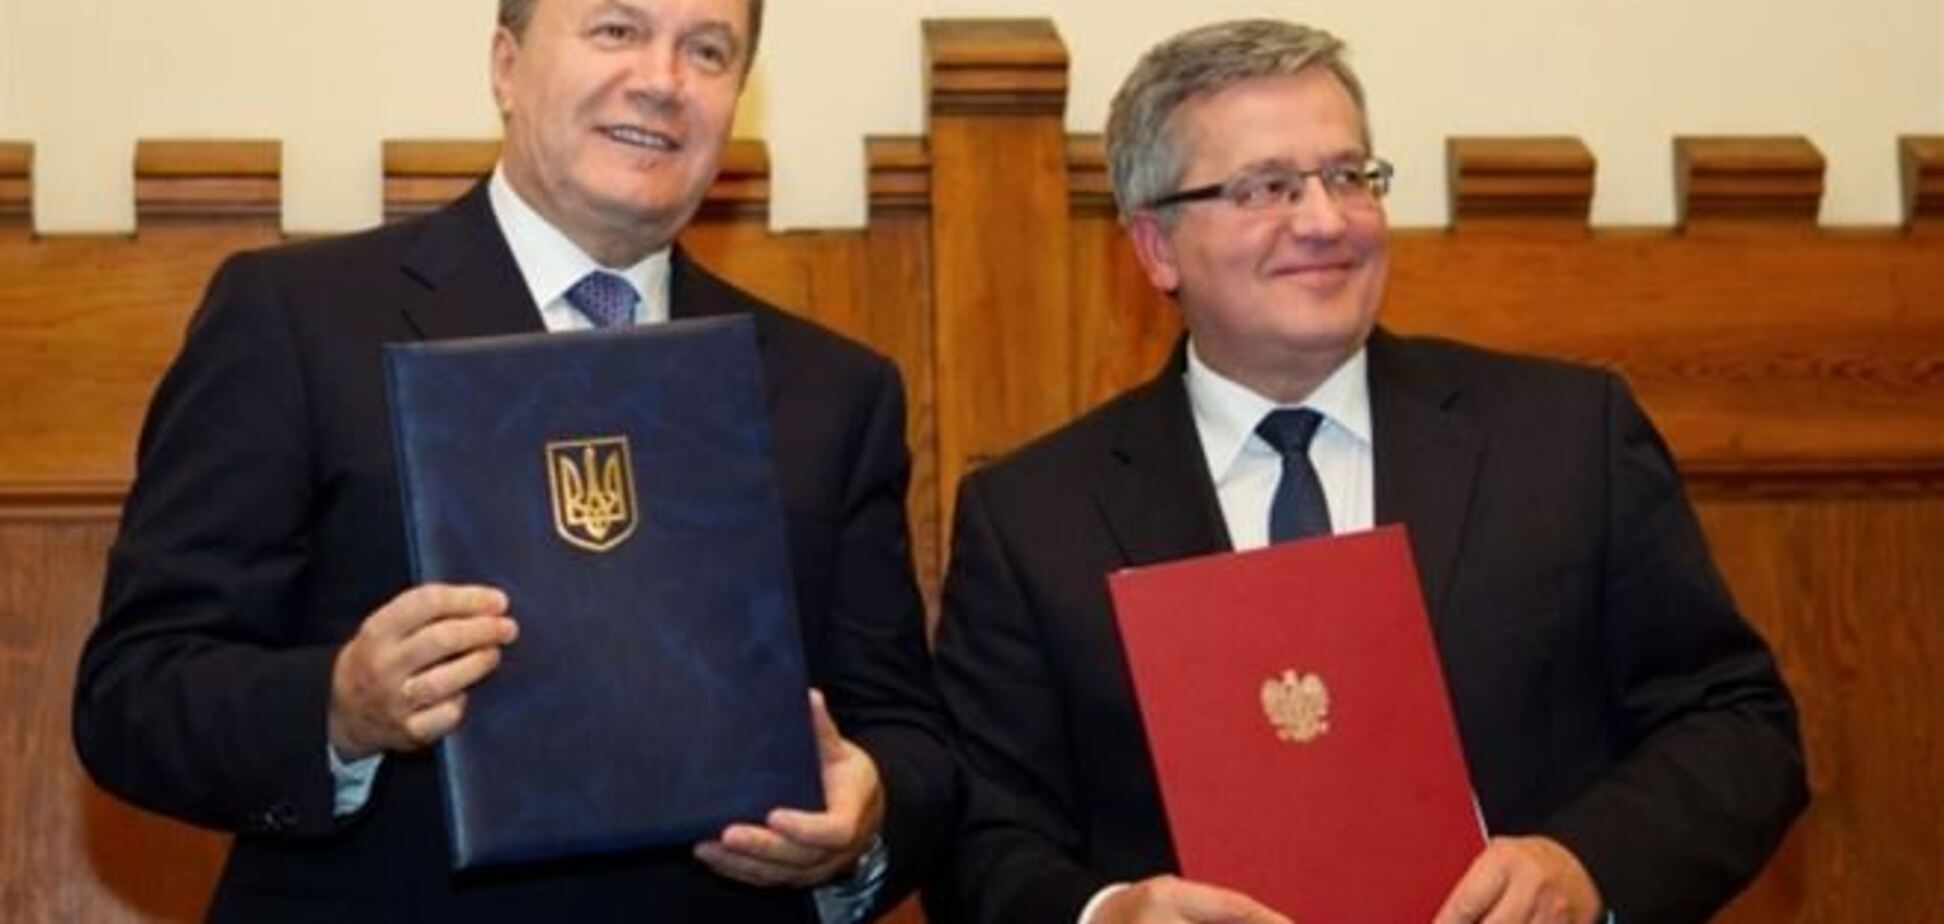 Рабочий визит Виктора Януковича в Республику Польша